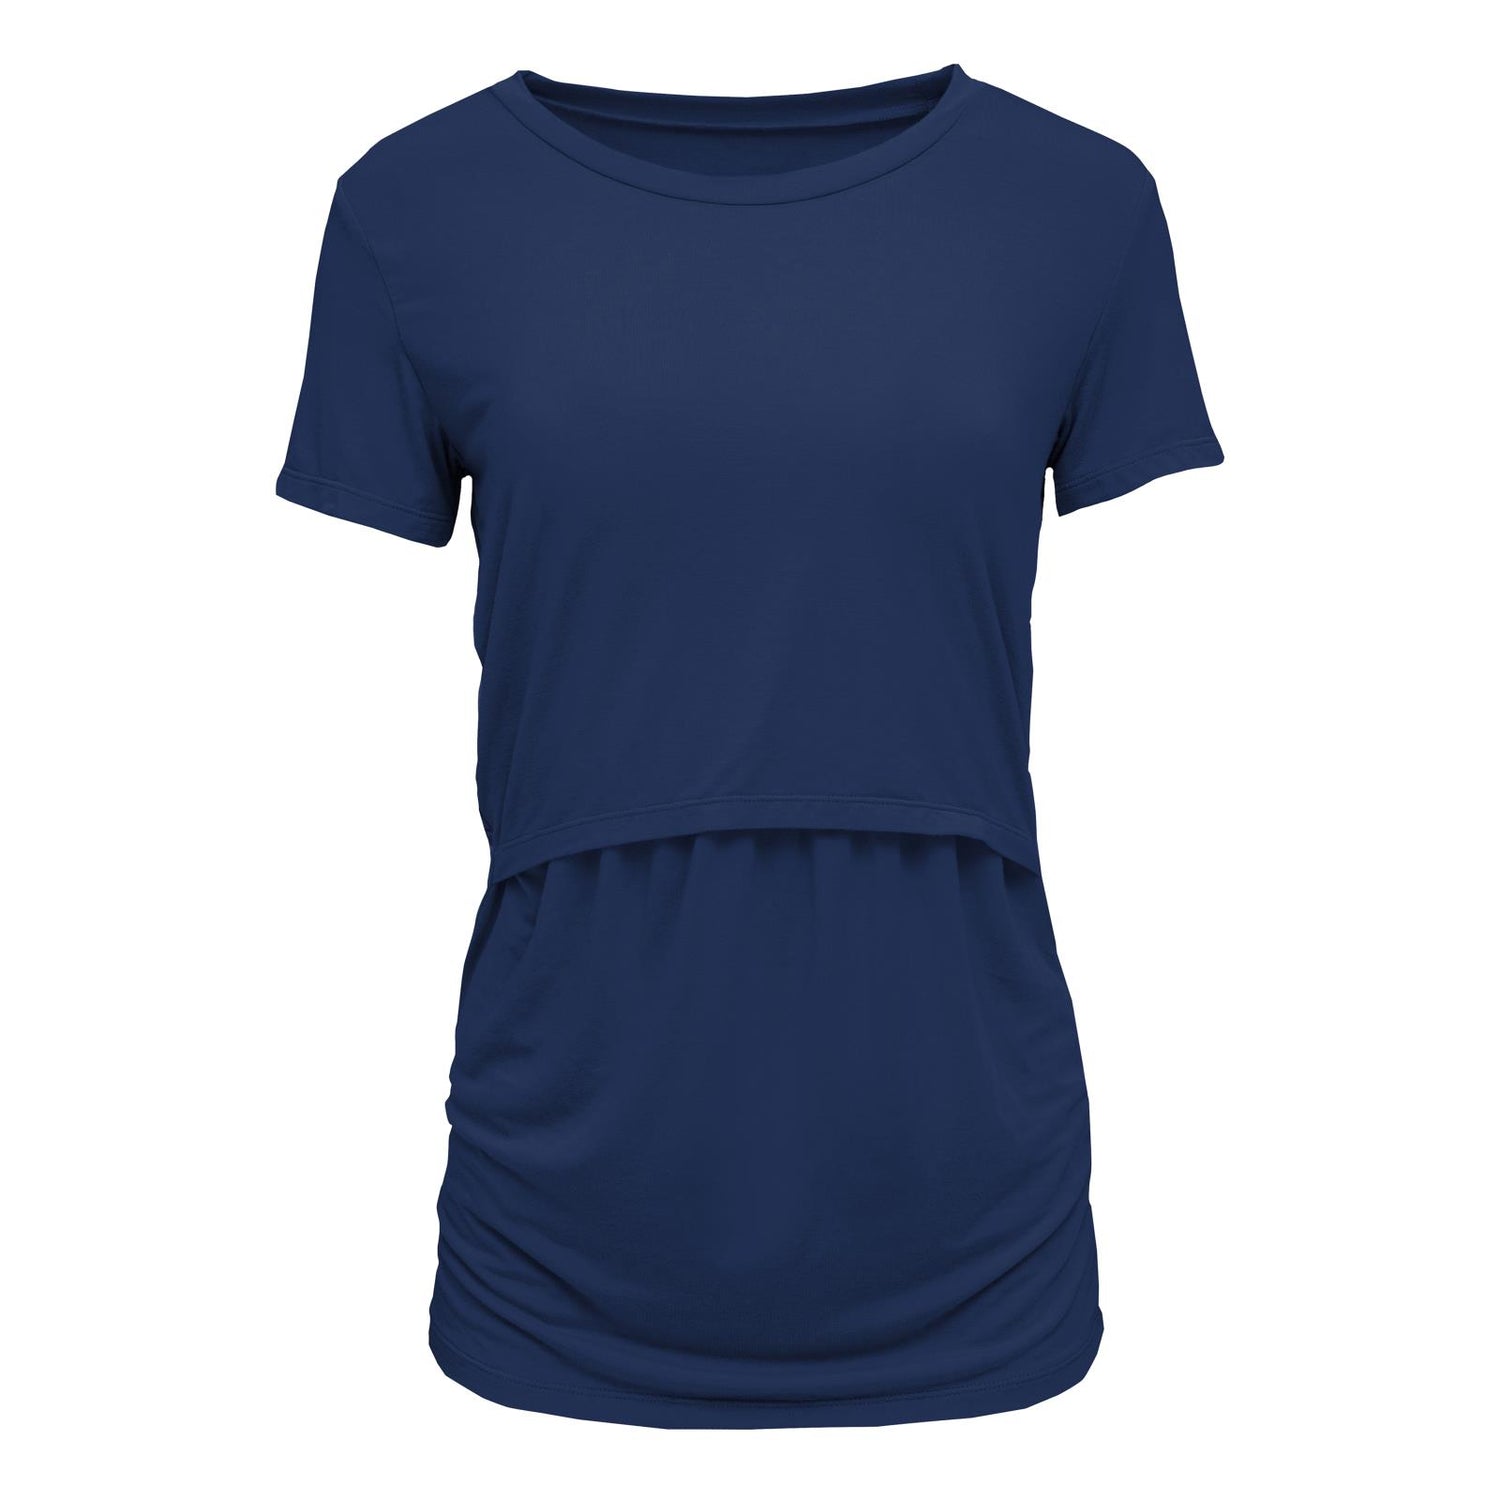 Women's Short Sleeve Nursing Tee in Flag Blue